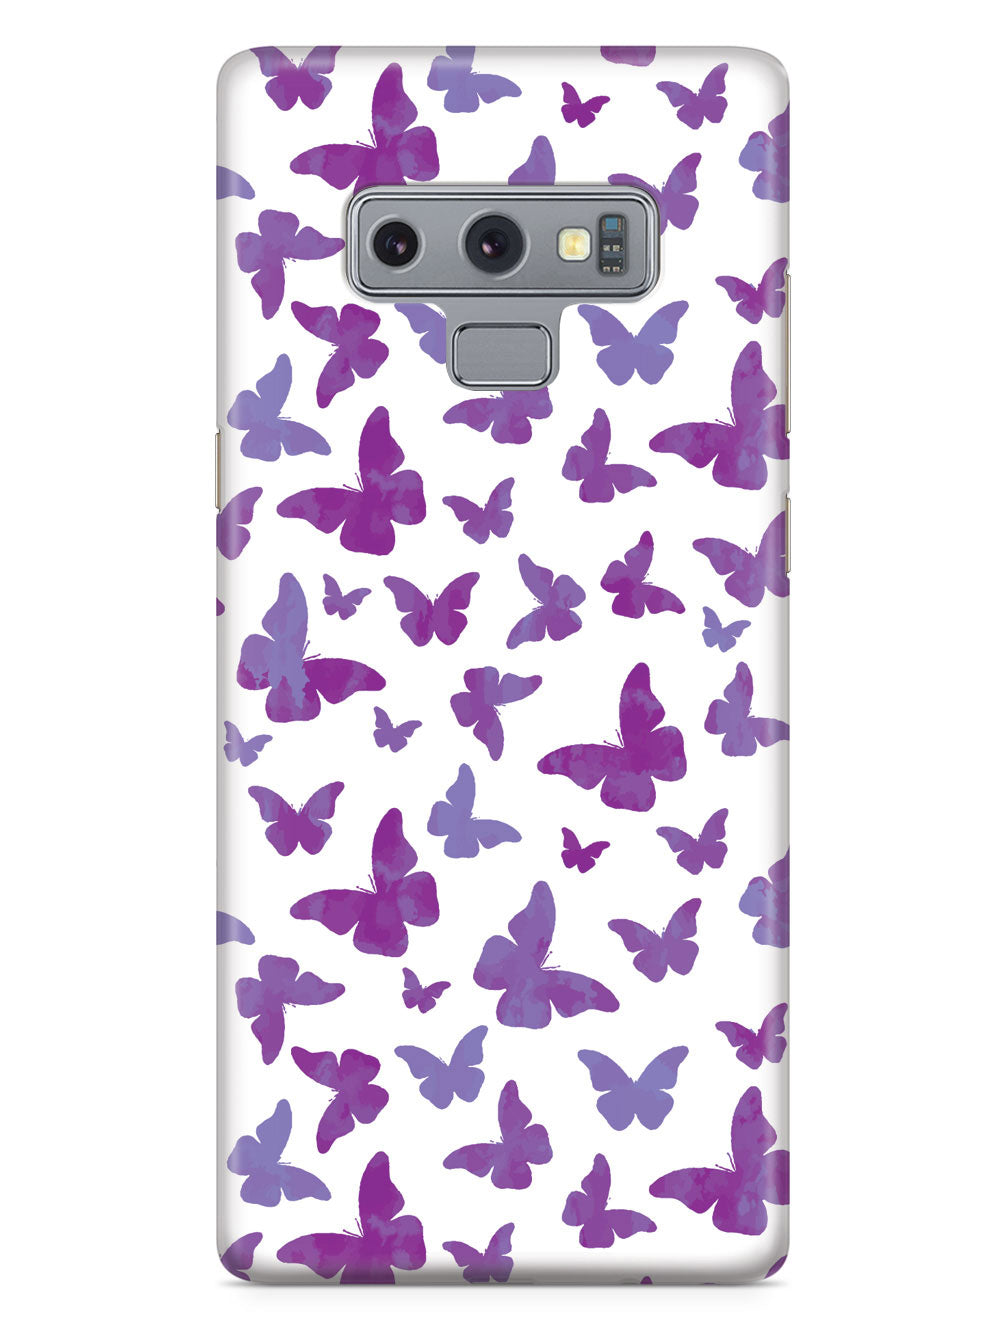 Purple Butterflies - White Case